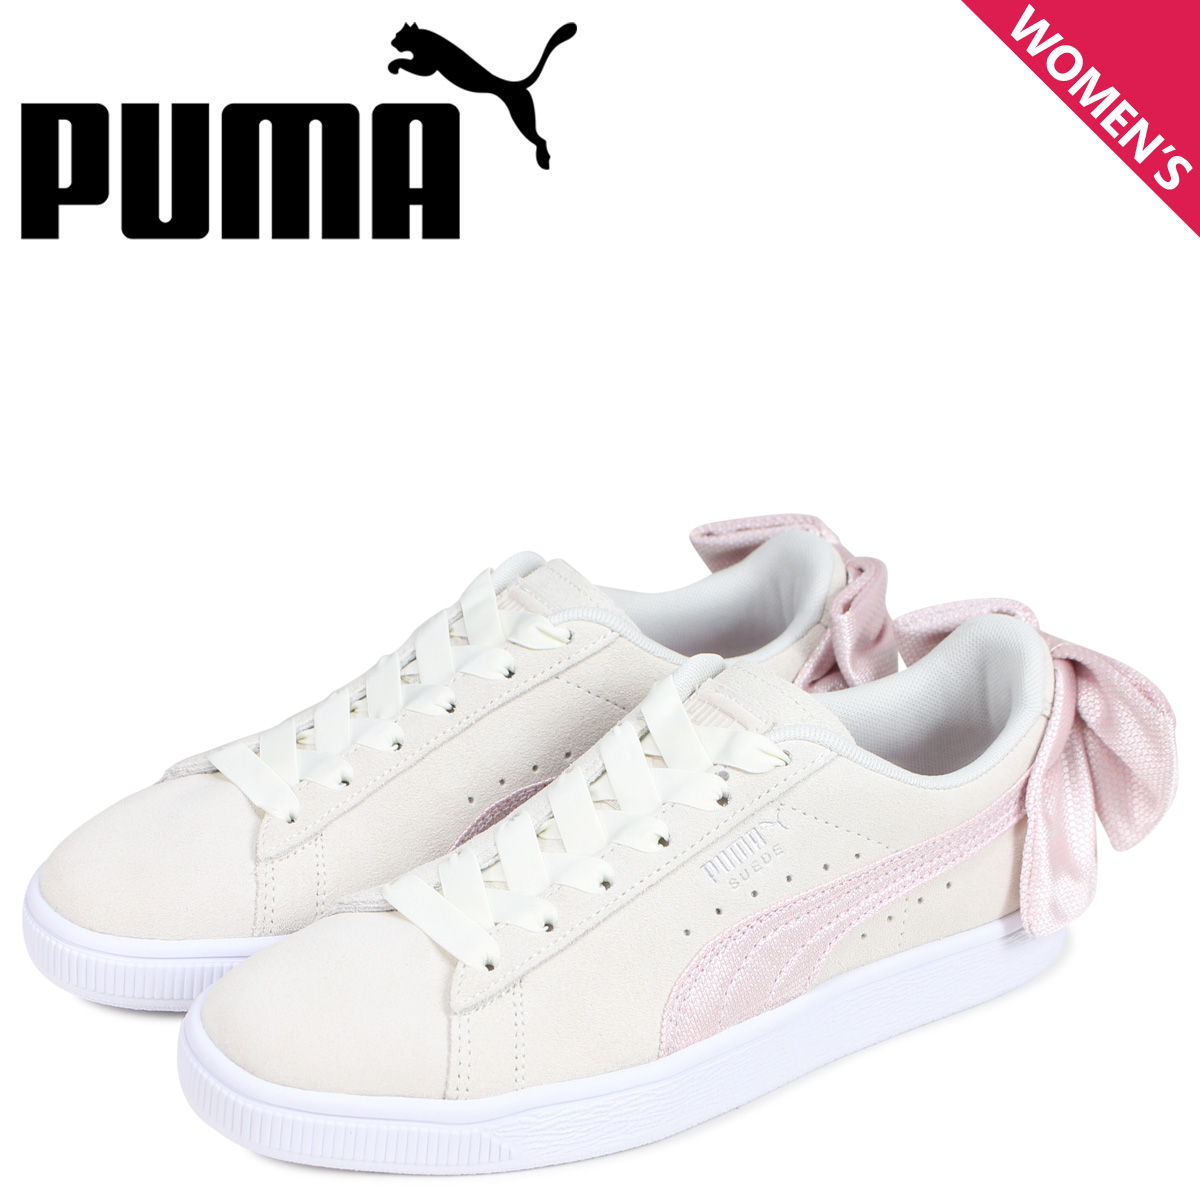 puma suede pink white